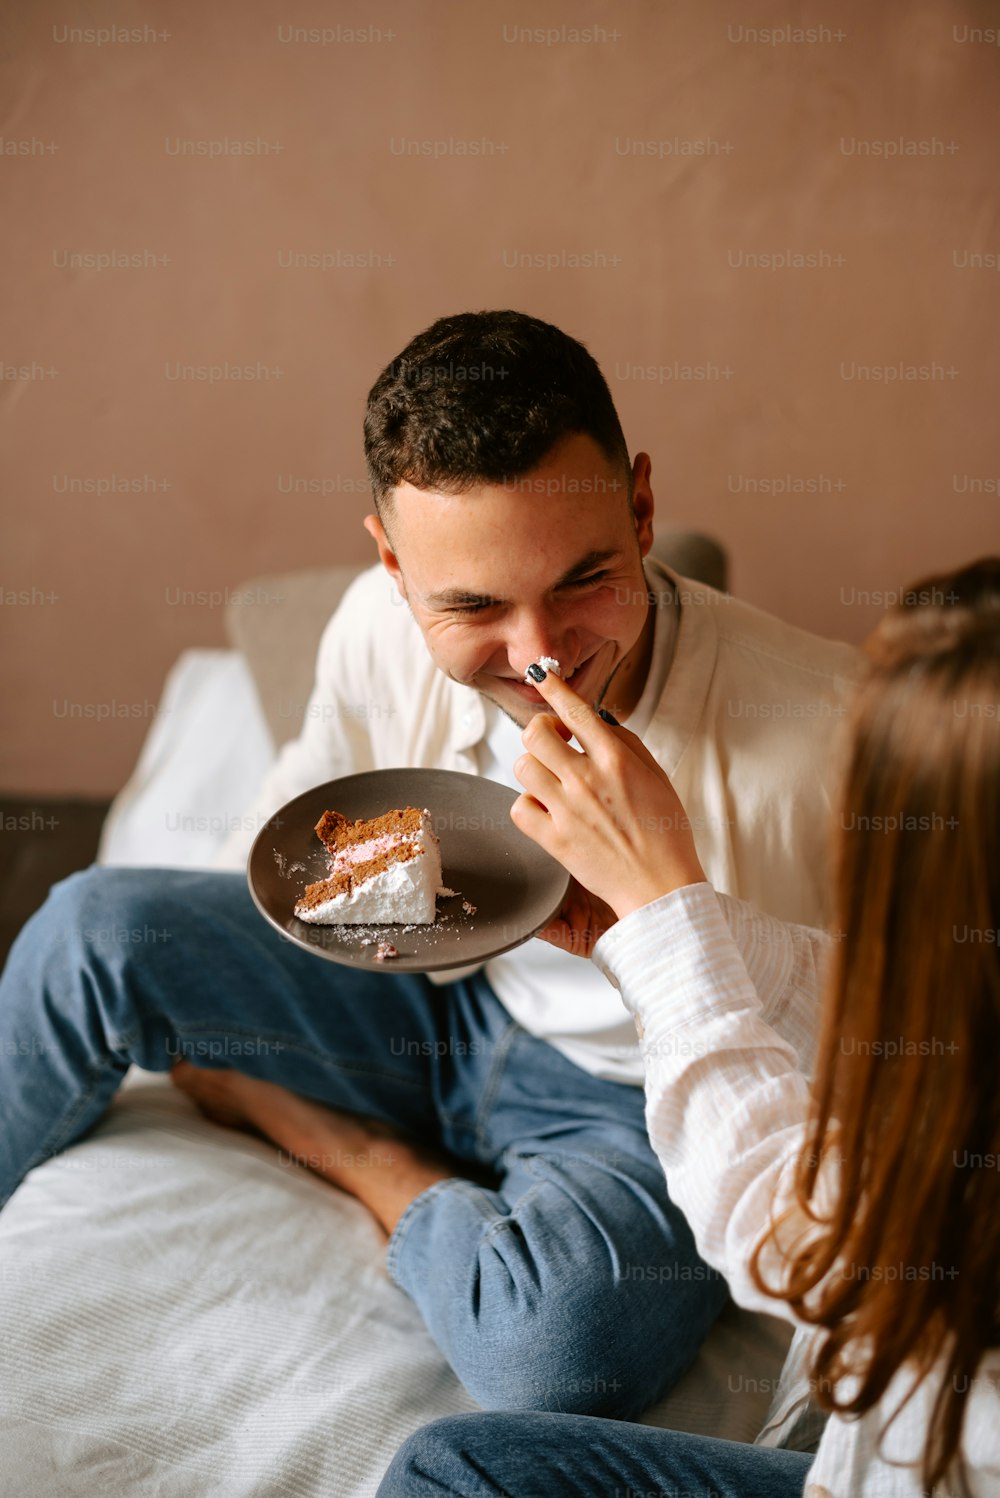 Un homme et une femme assis sur un lit en train de manger du gâteau